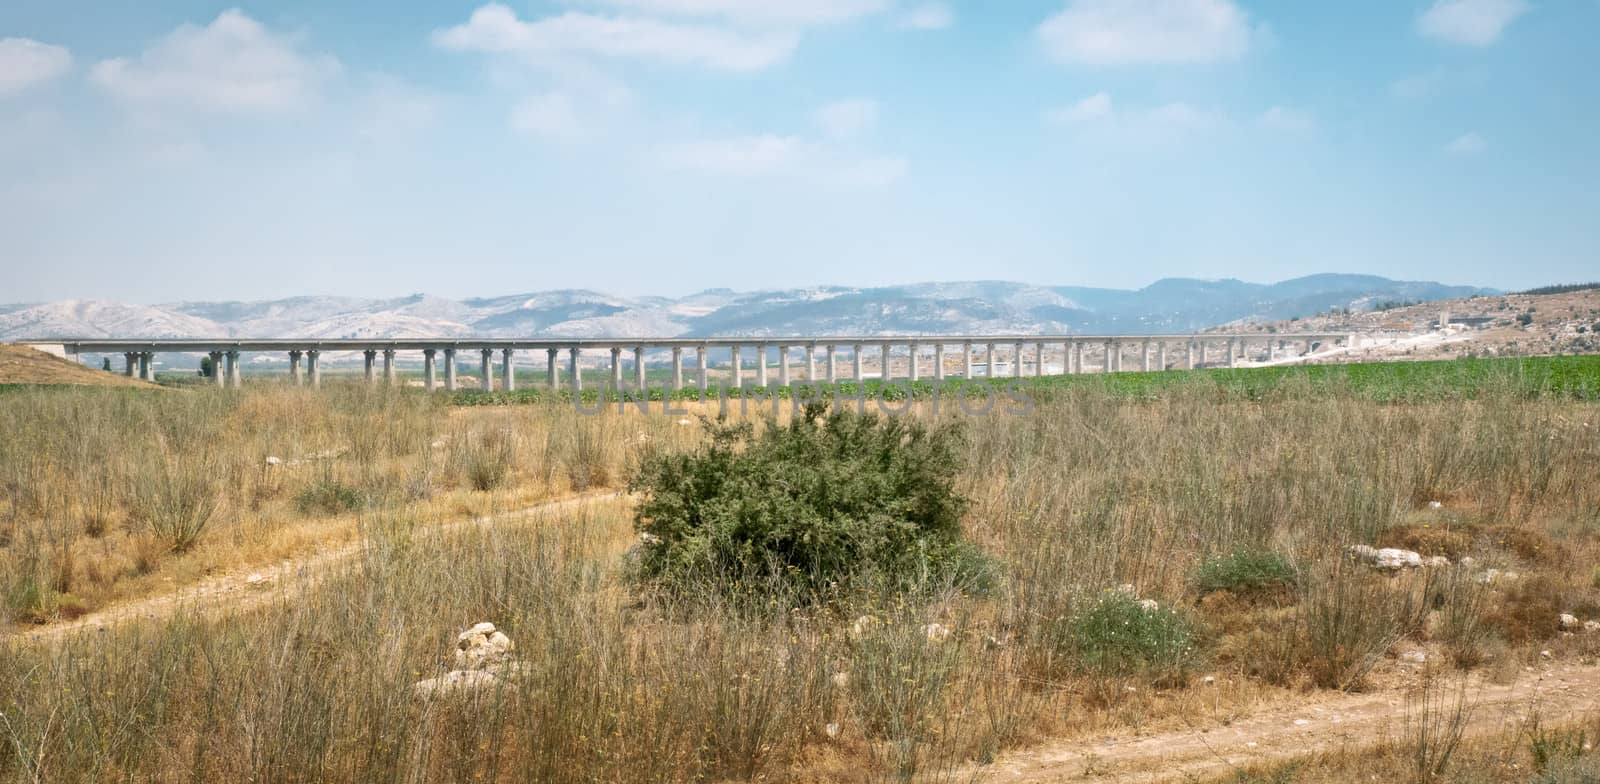 Summer field plateau near Jerusalem hills . Bridge. Israel .